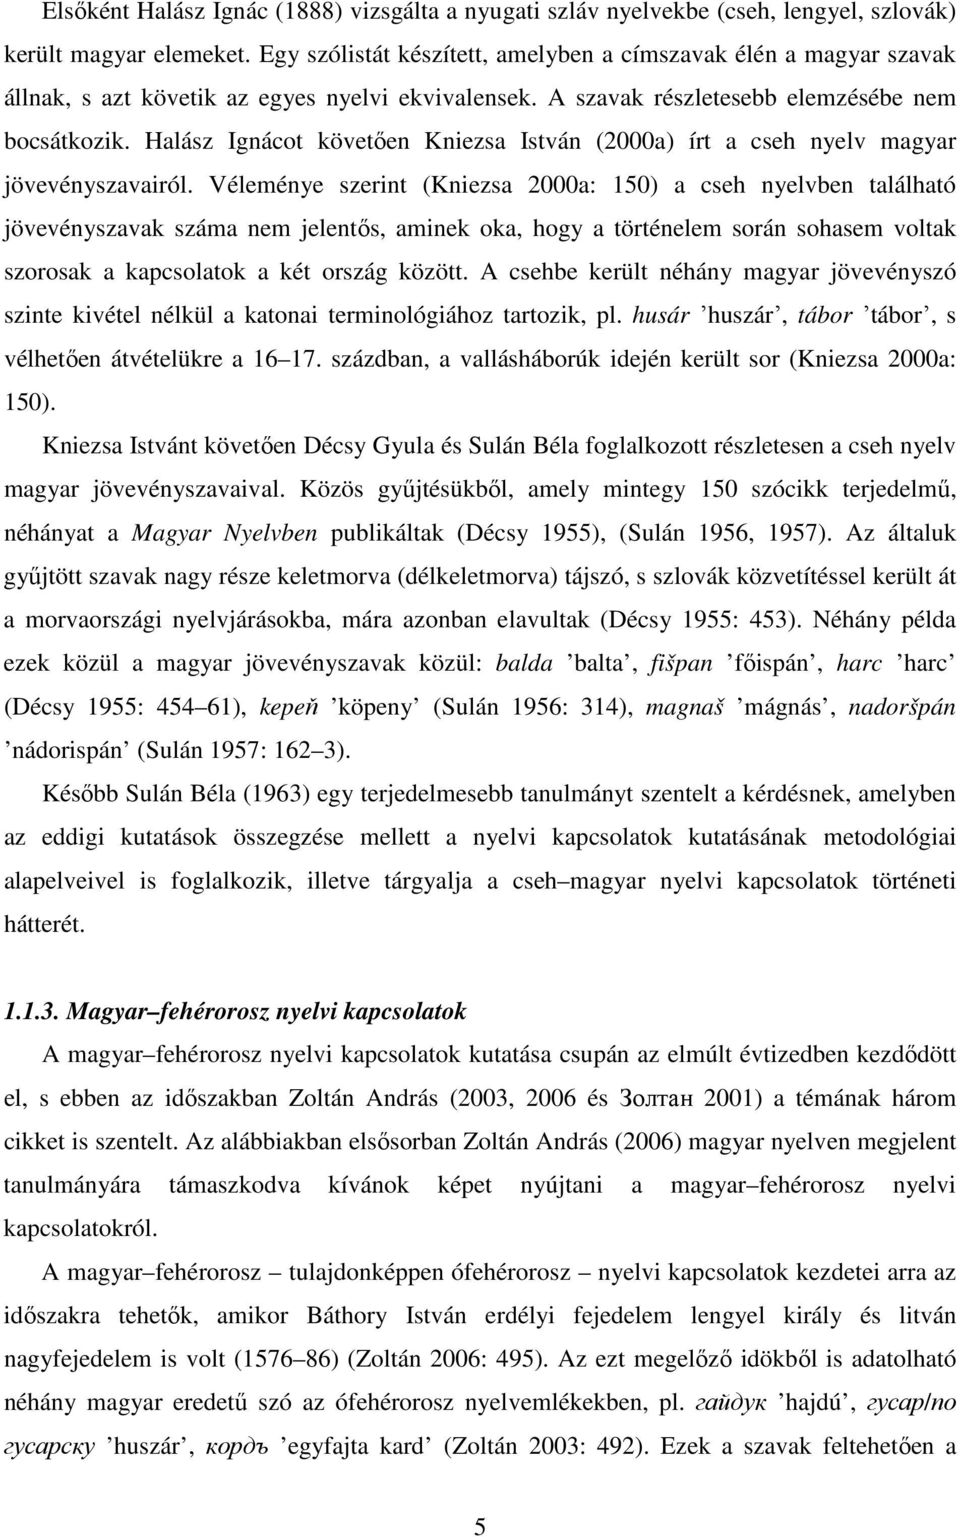 Halász Ignácot követően Kniezsa István (2000a) írt a cseh nyelv magyar jövevényszavairól.